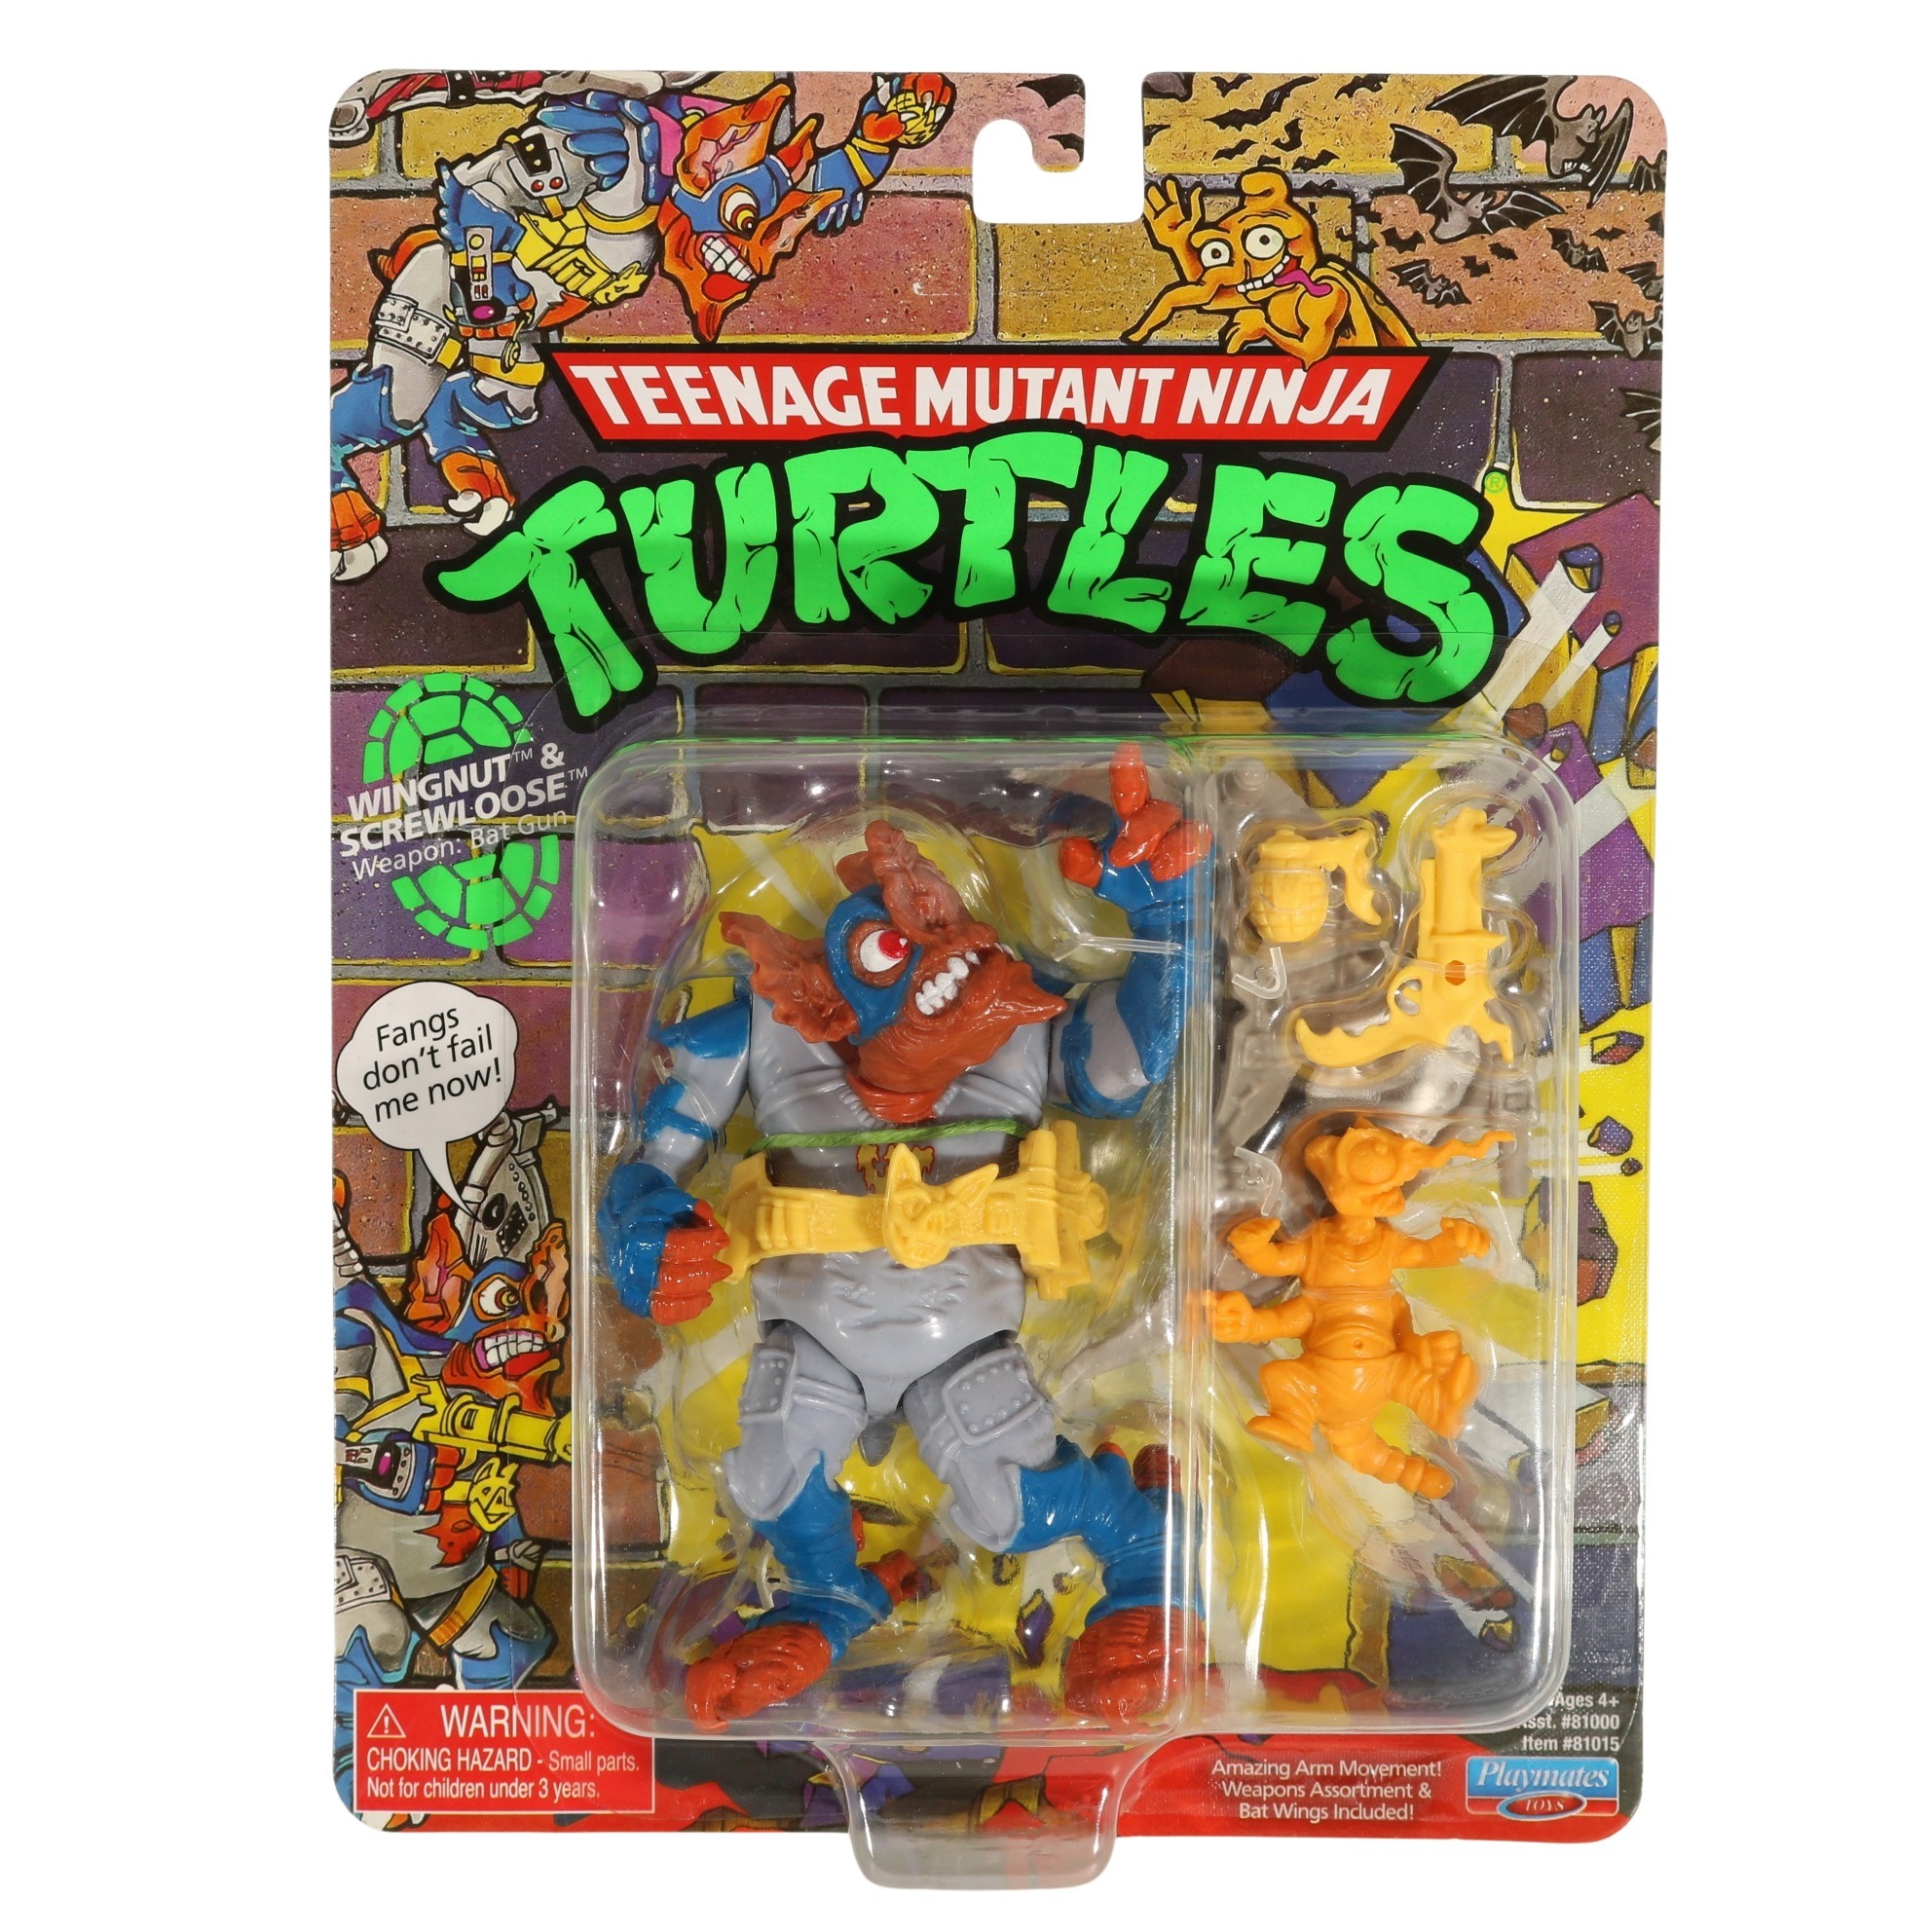 TMNT / Teenage Mutant Ninja Turtles Classic - Wingnut & Screwloose - Playmate...